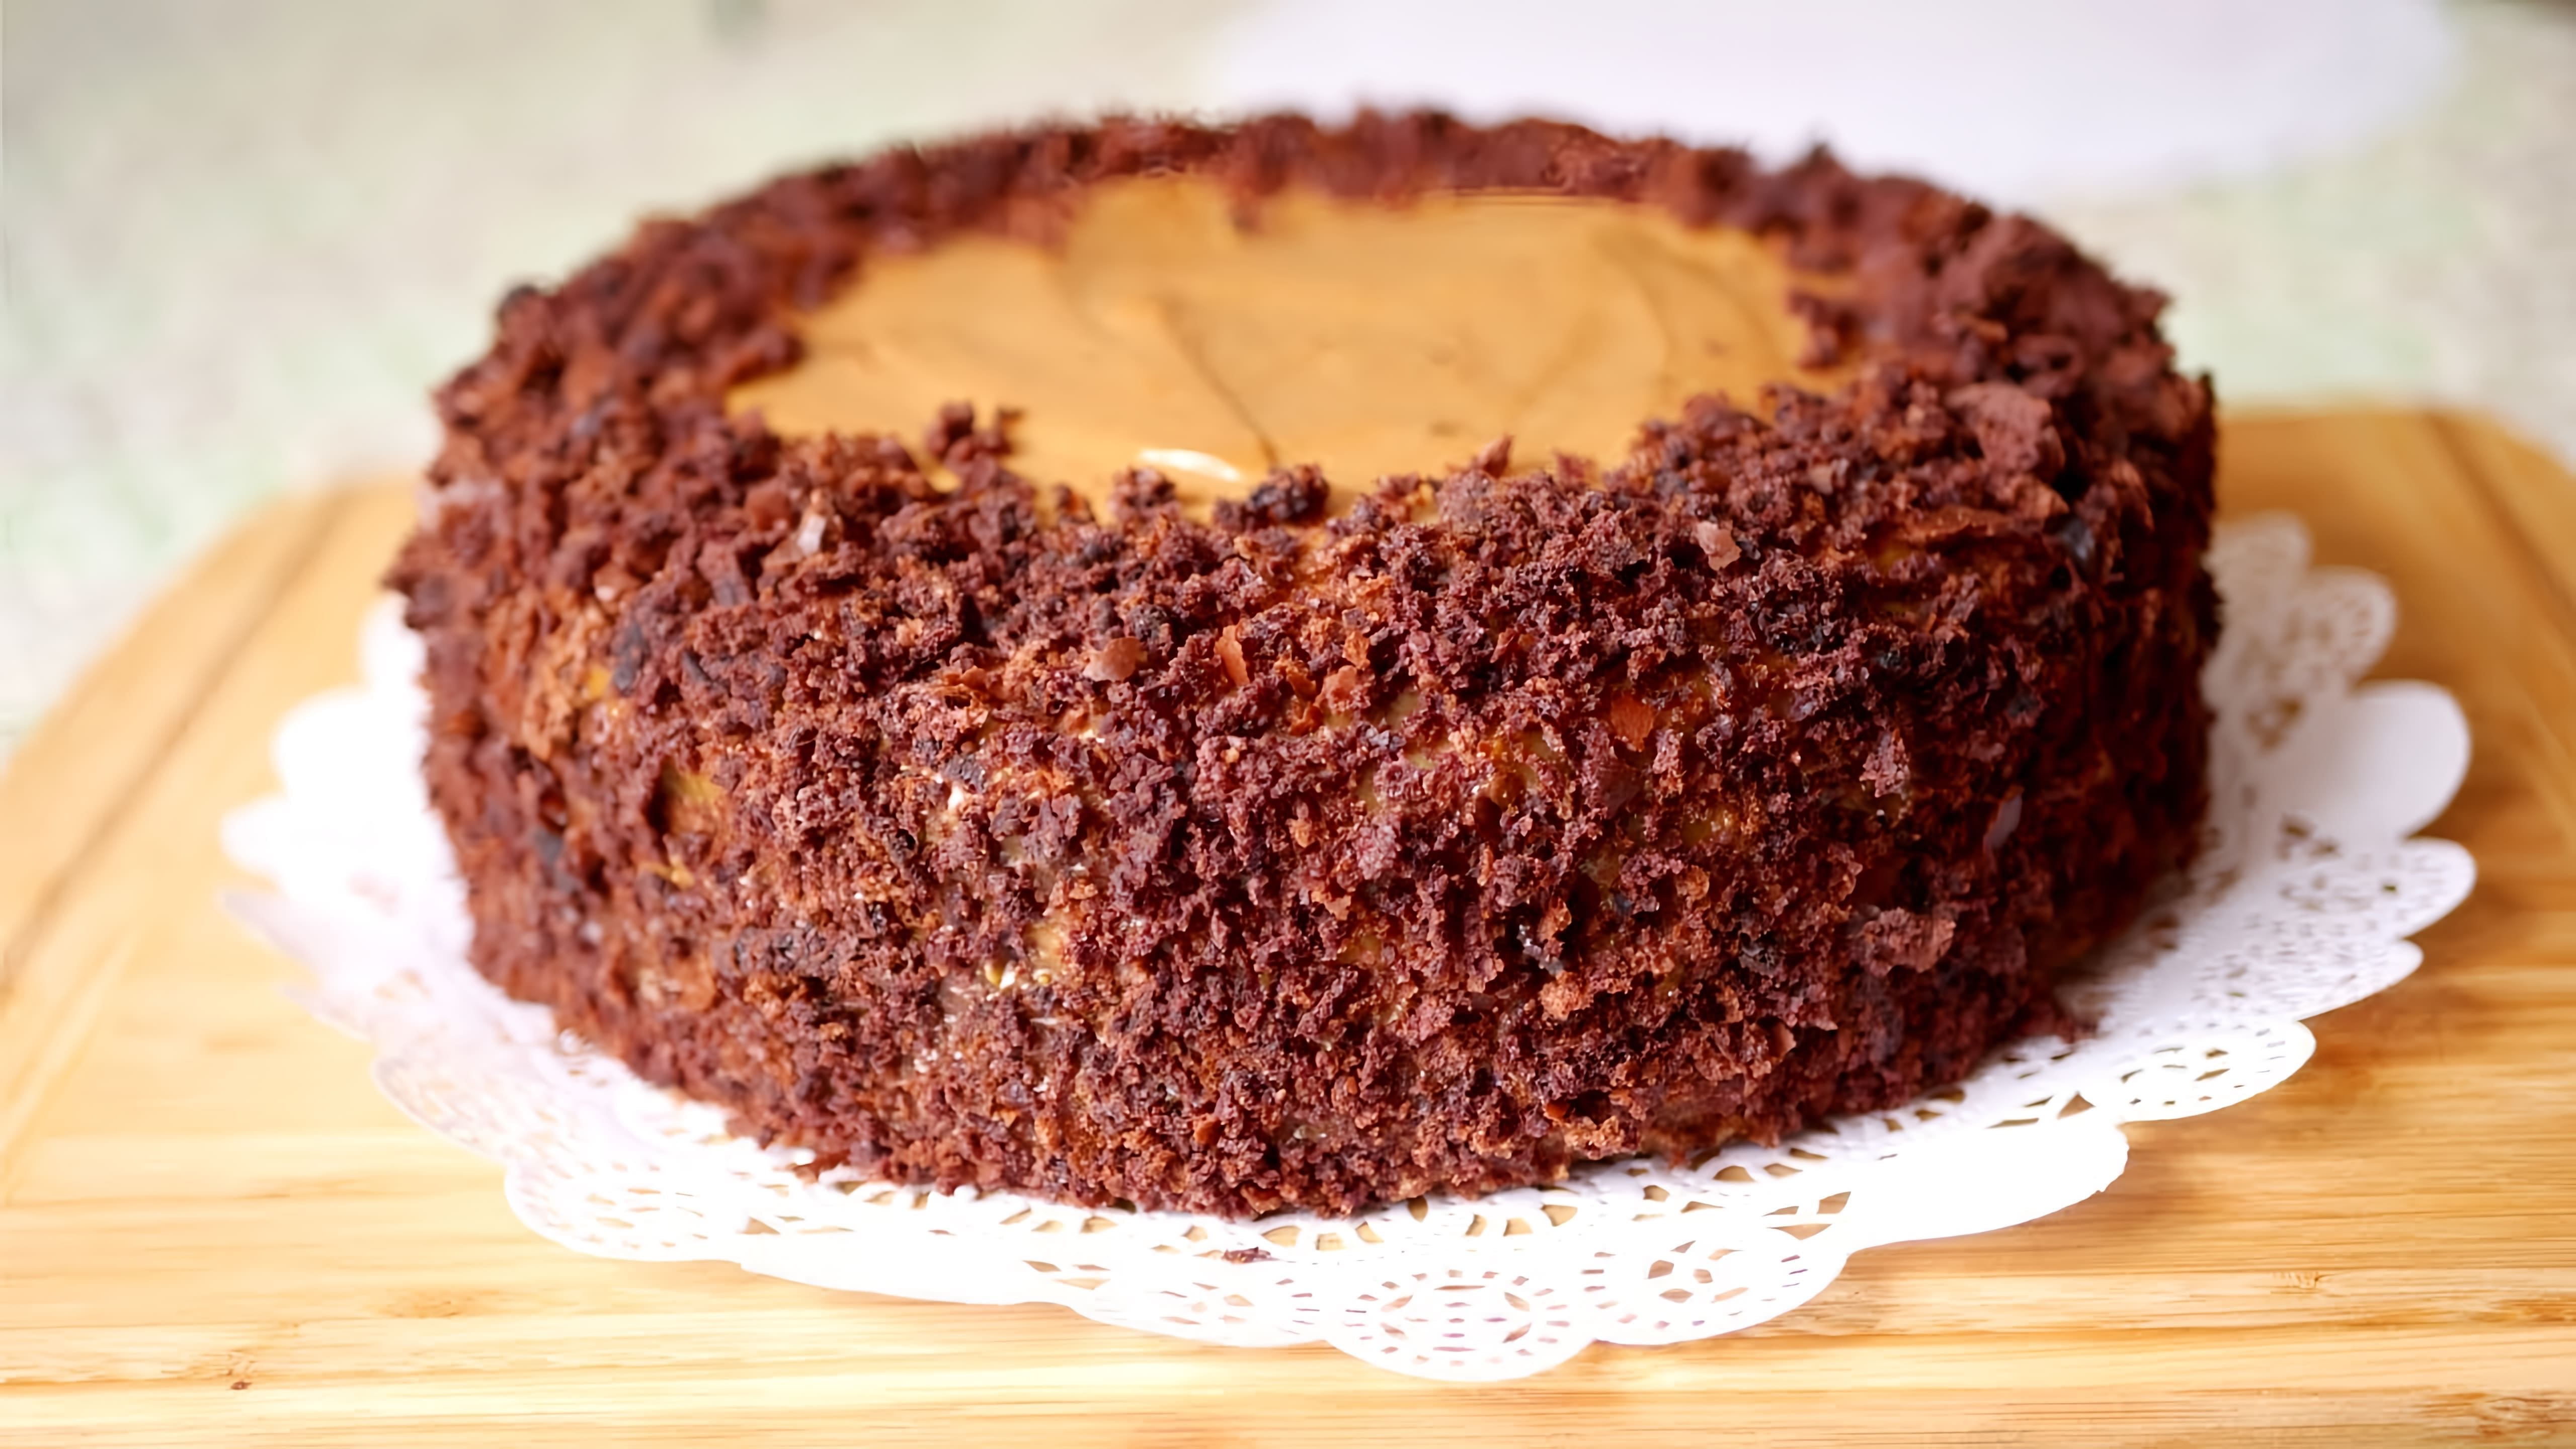 В этом видео демонстрируется рецепт приготовления торта "МИХАЛЫЧ" на кефире